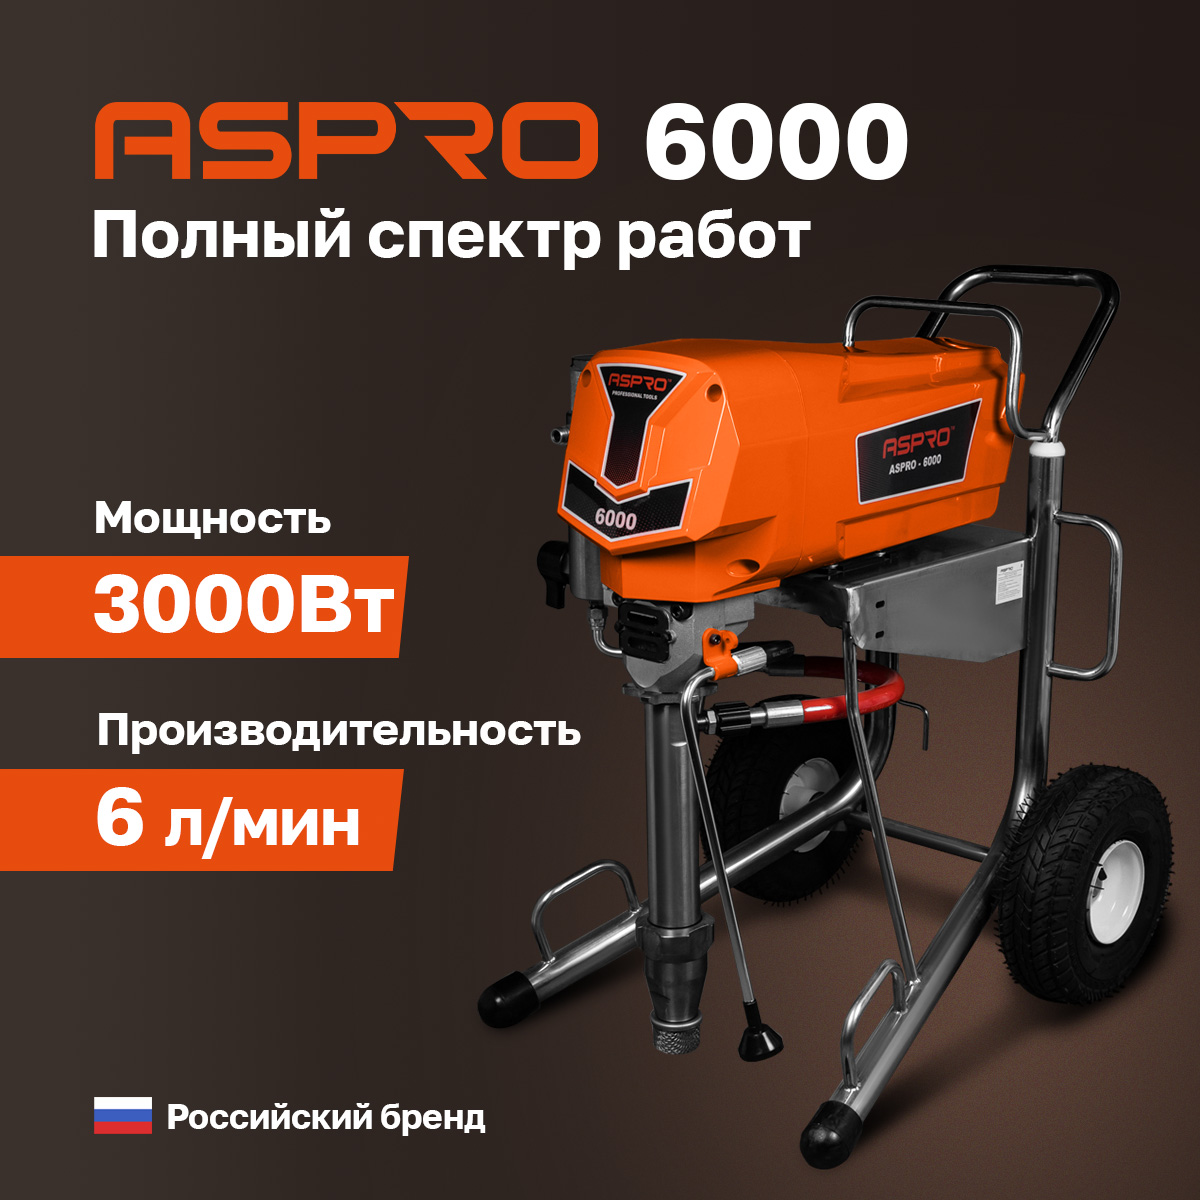 Окрасочный аппарат ASPRO-6000® окрасочный аппарат aspro 6000®